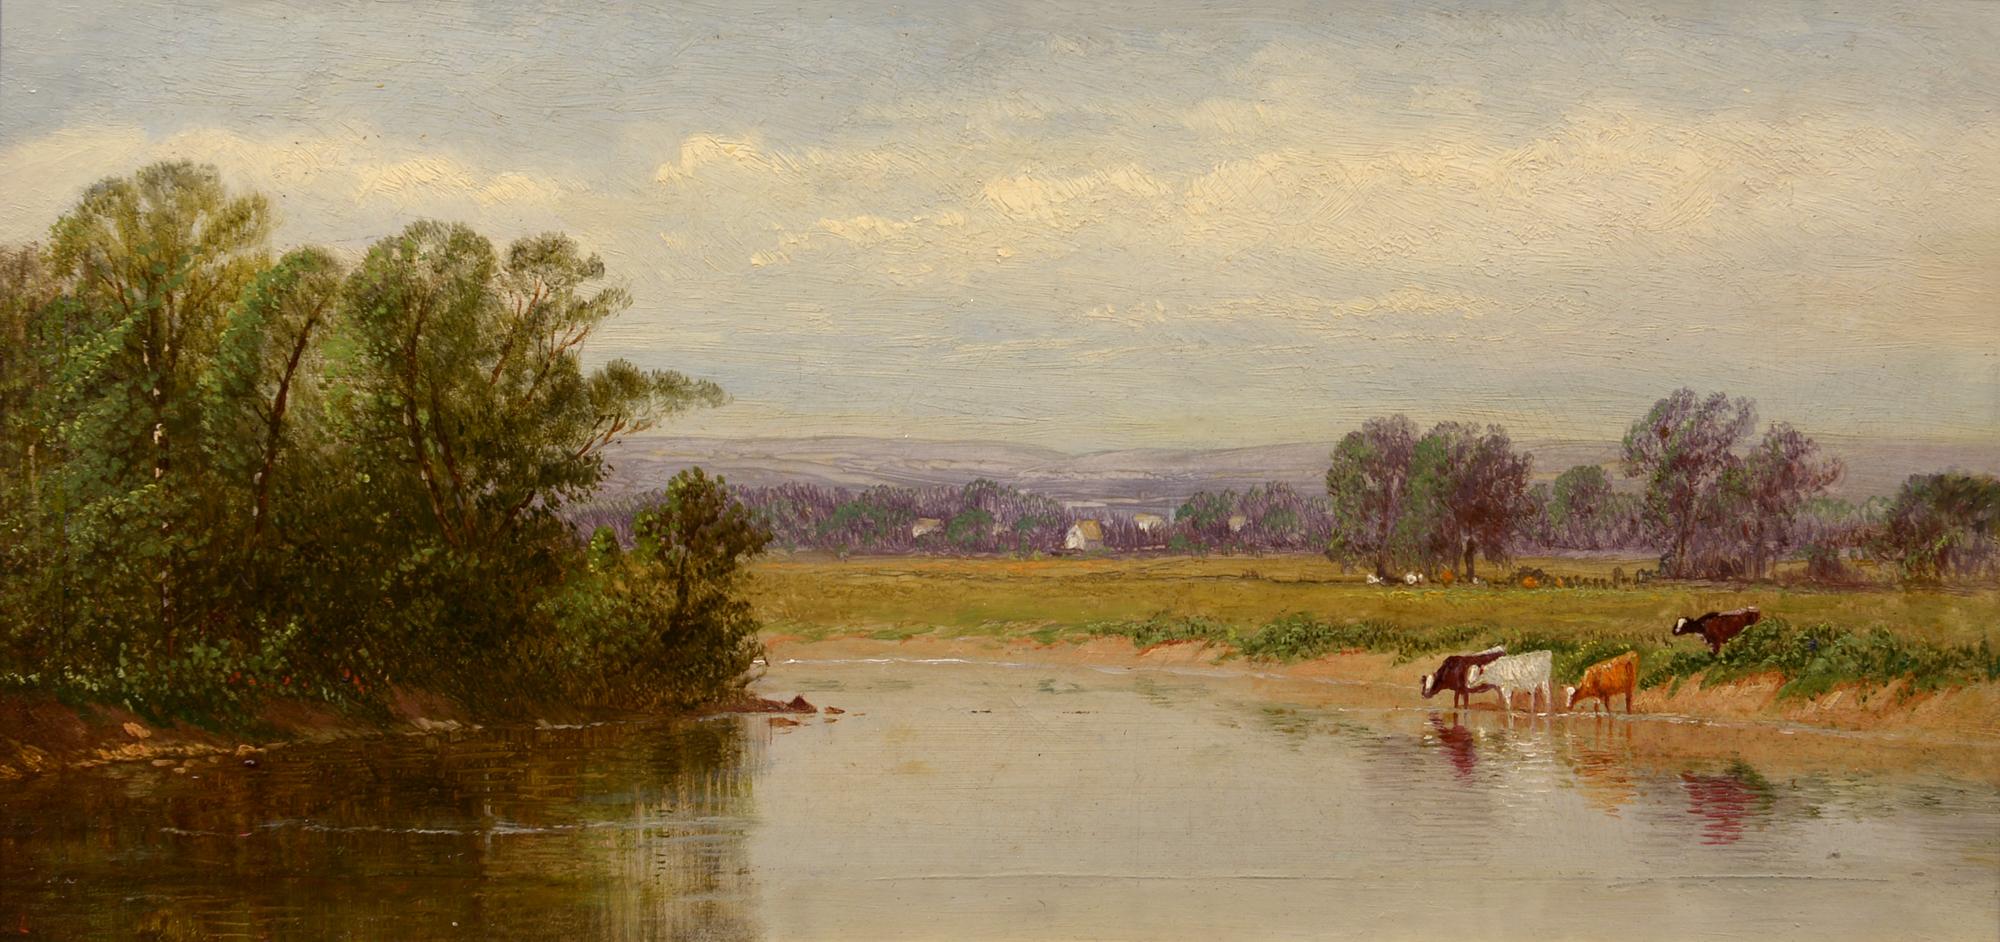 Along the River, Cattle Grazing, American Realist, huile sur panneau, paysage